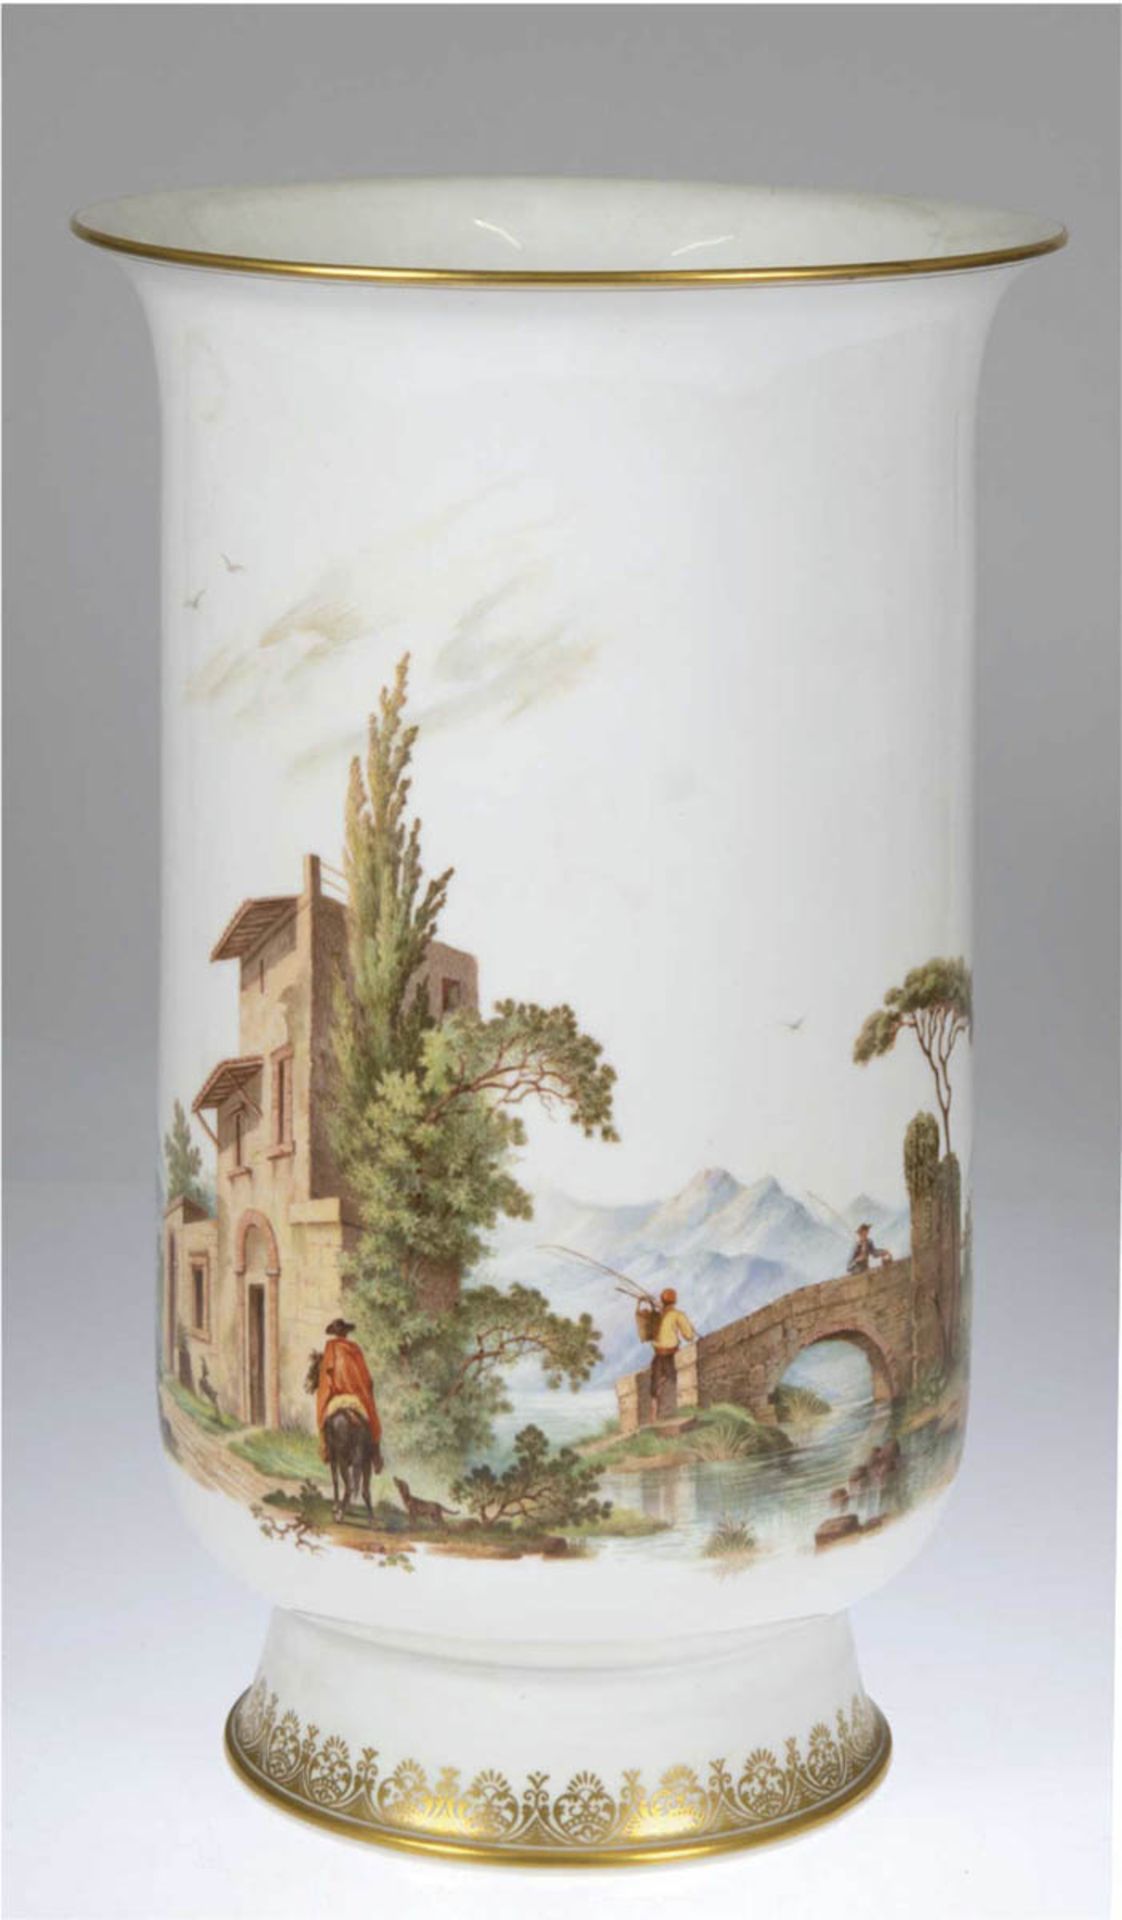 Große Meissen-Vase, 20. Jh., umlaufend polychrome Landschaftsmalerei mit Personenstaffageund